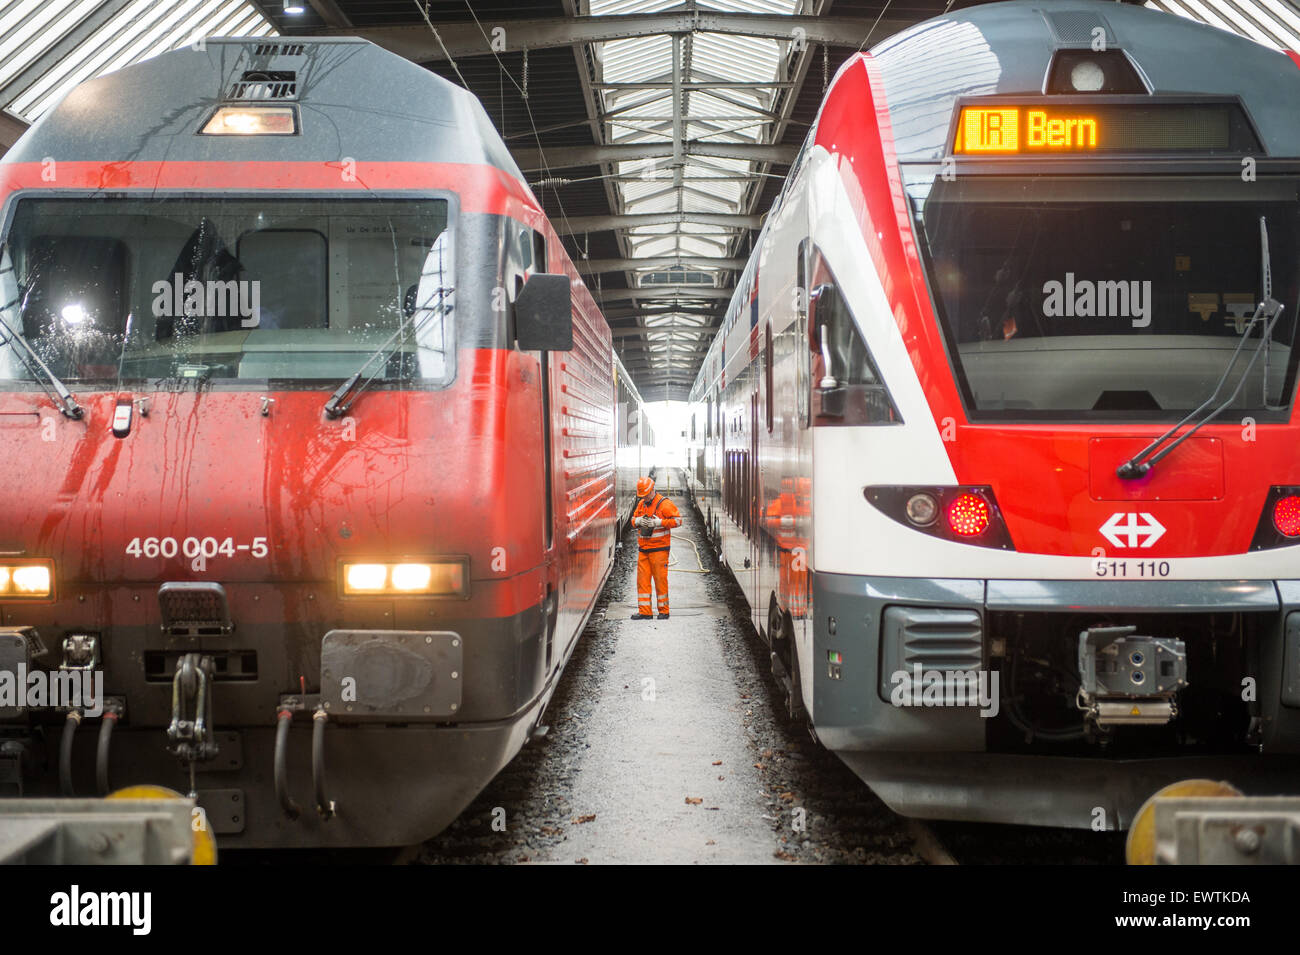 Workman wearing orange standing between trains at the train station in Zurich Switzerland, Europe Stock Photo